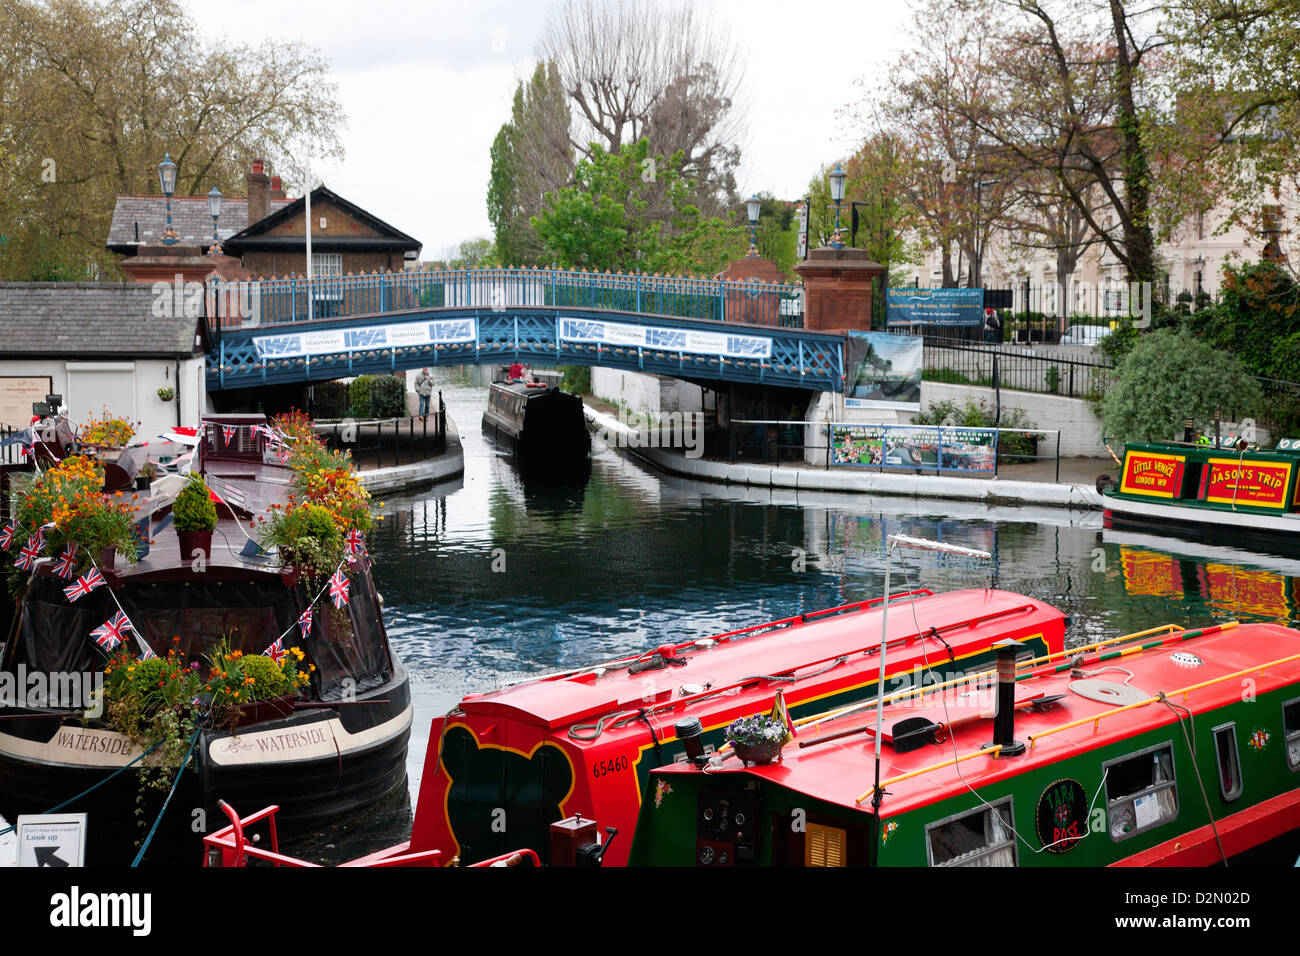 Le Grand Union Canal montrant le Westbourne Terrace Road Bridge, Little Venice, Maida Vale, London, England, UK Banque D'Images